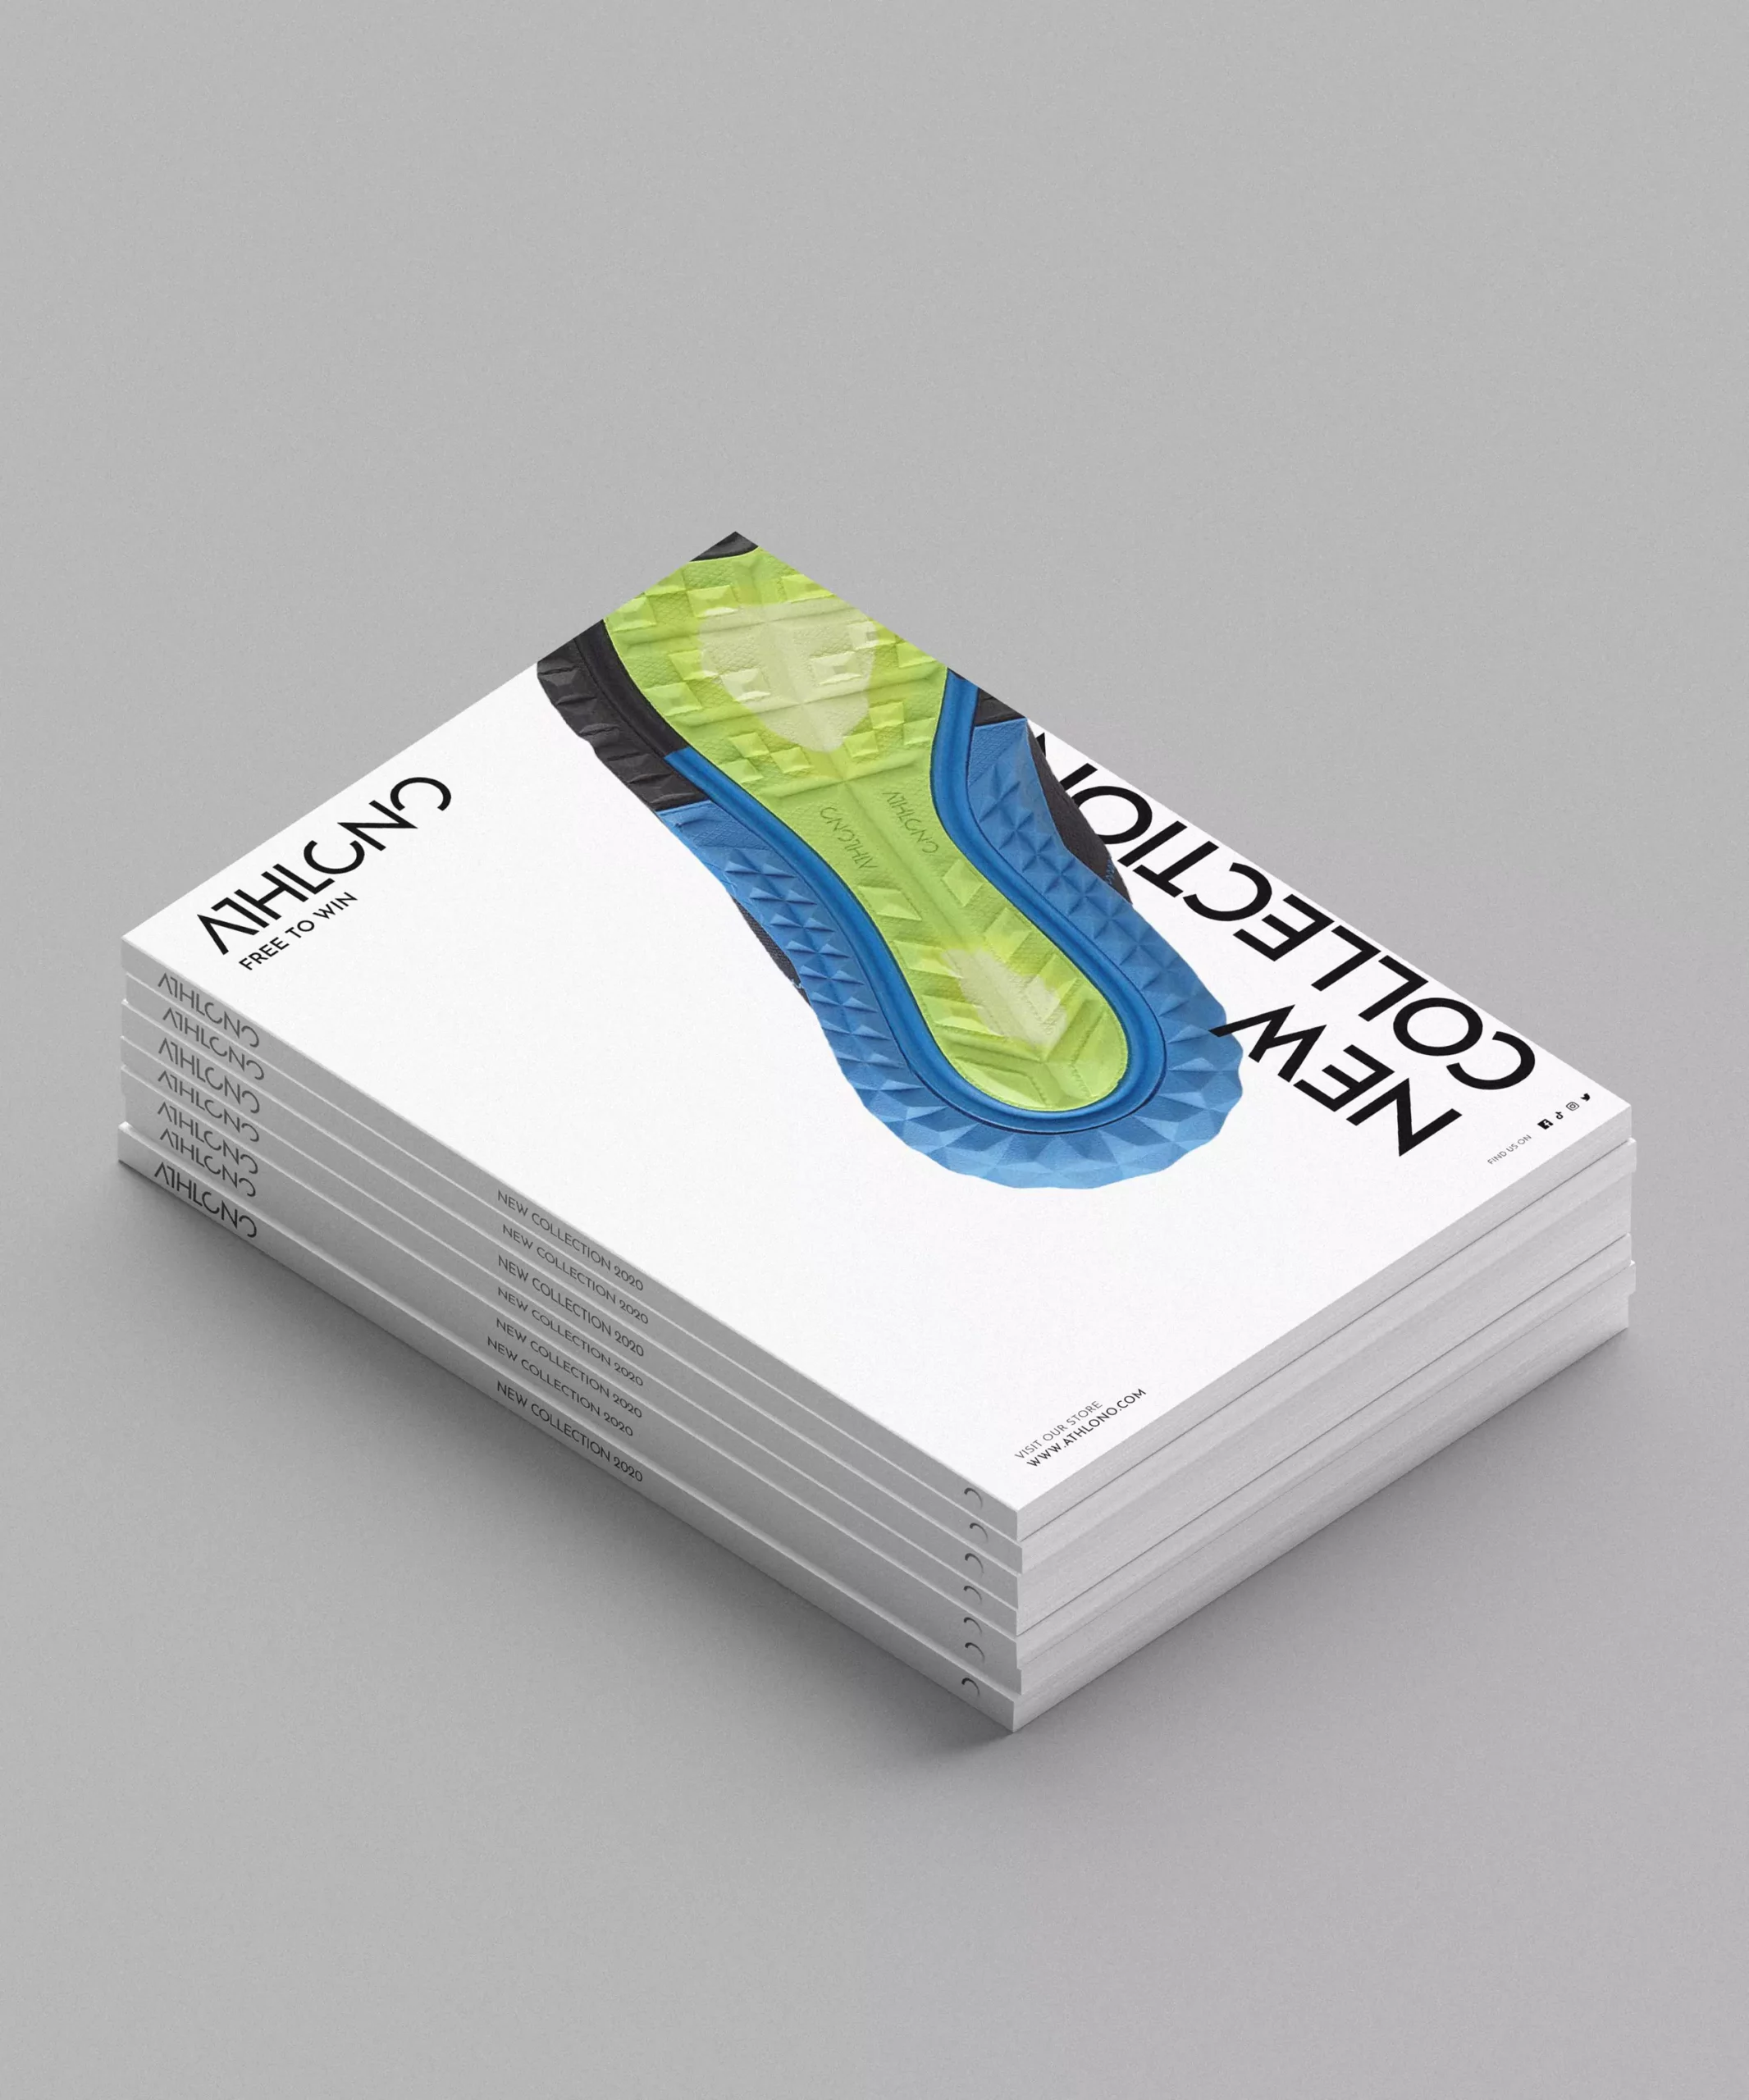 Athlono Brand Identity - Cover Catalogue Design